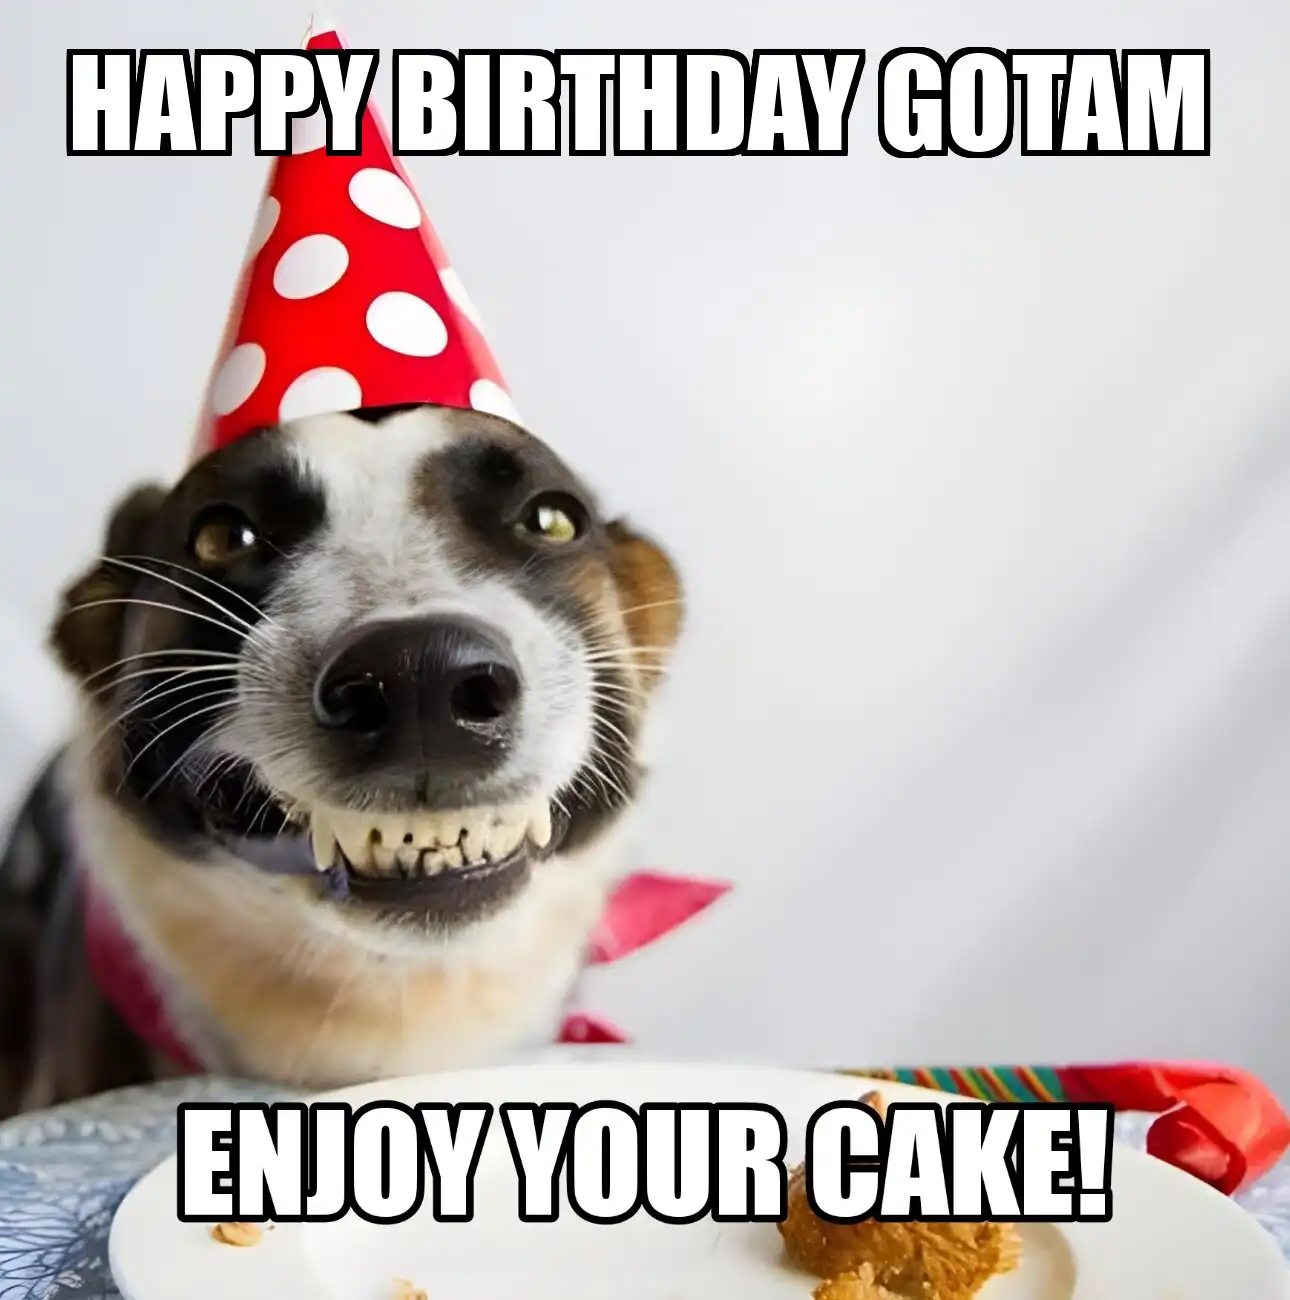 Happy Birthday Gotam Enjoy Your Cake Dog Meme